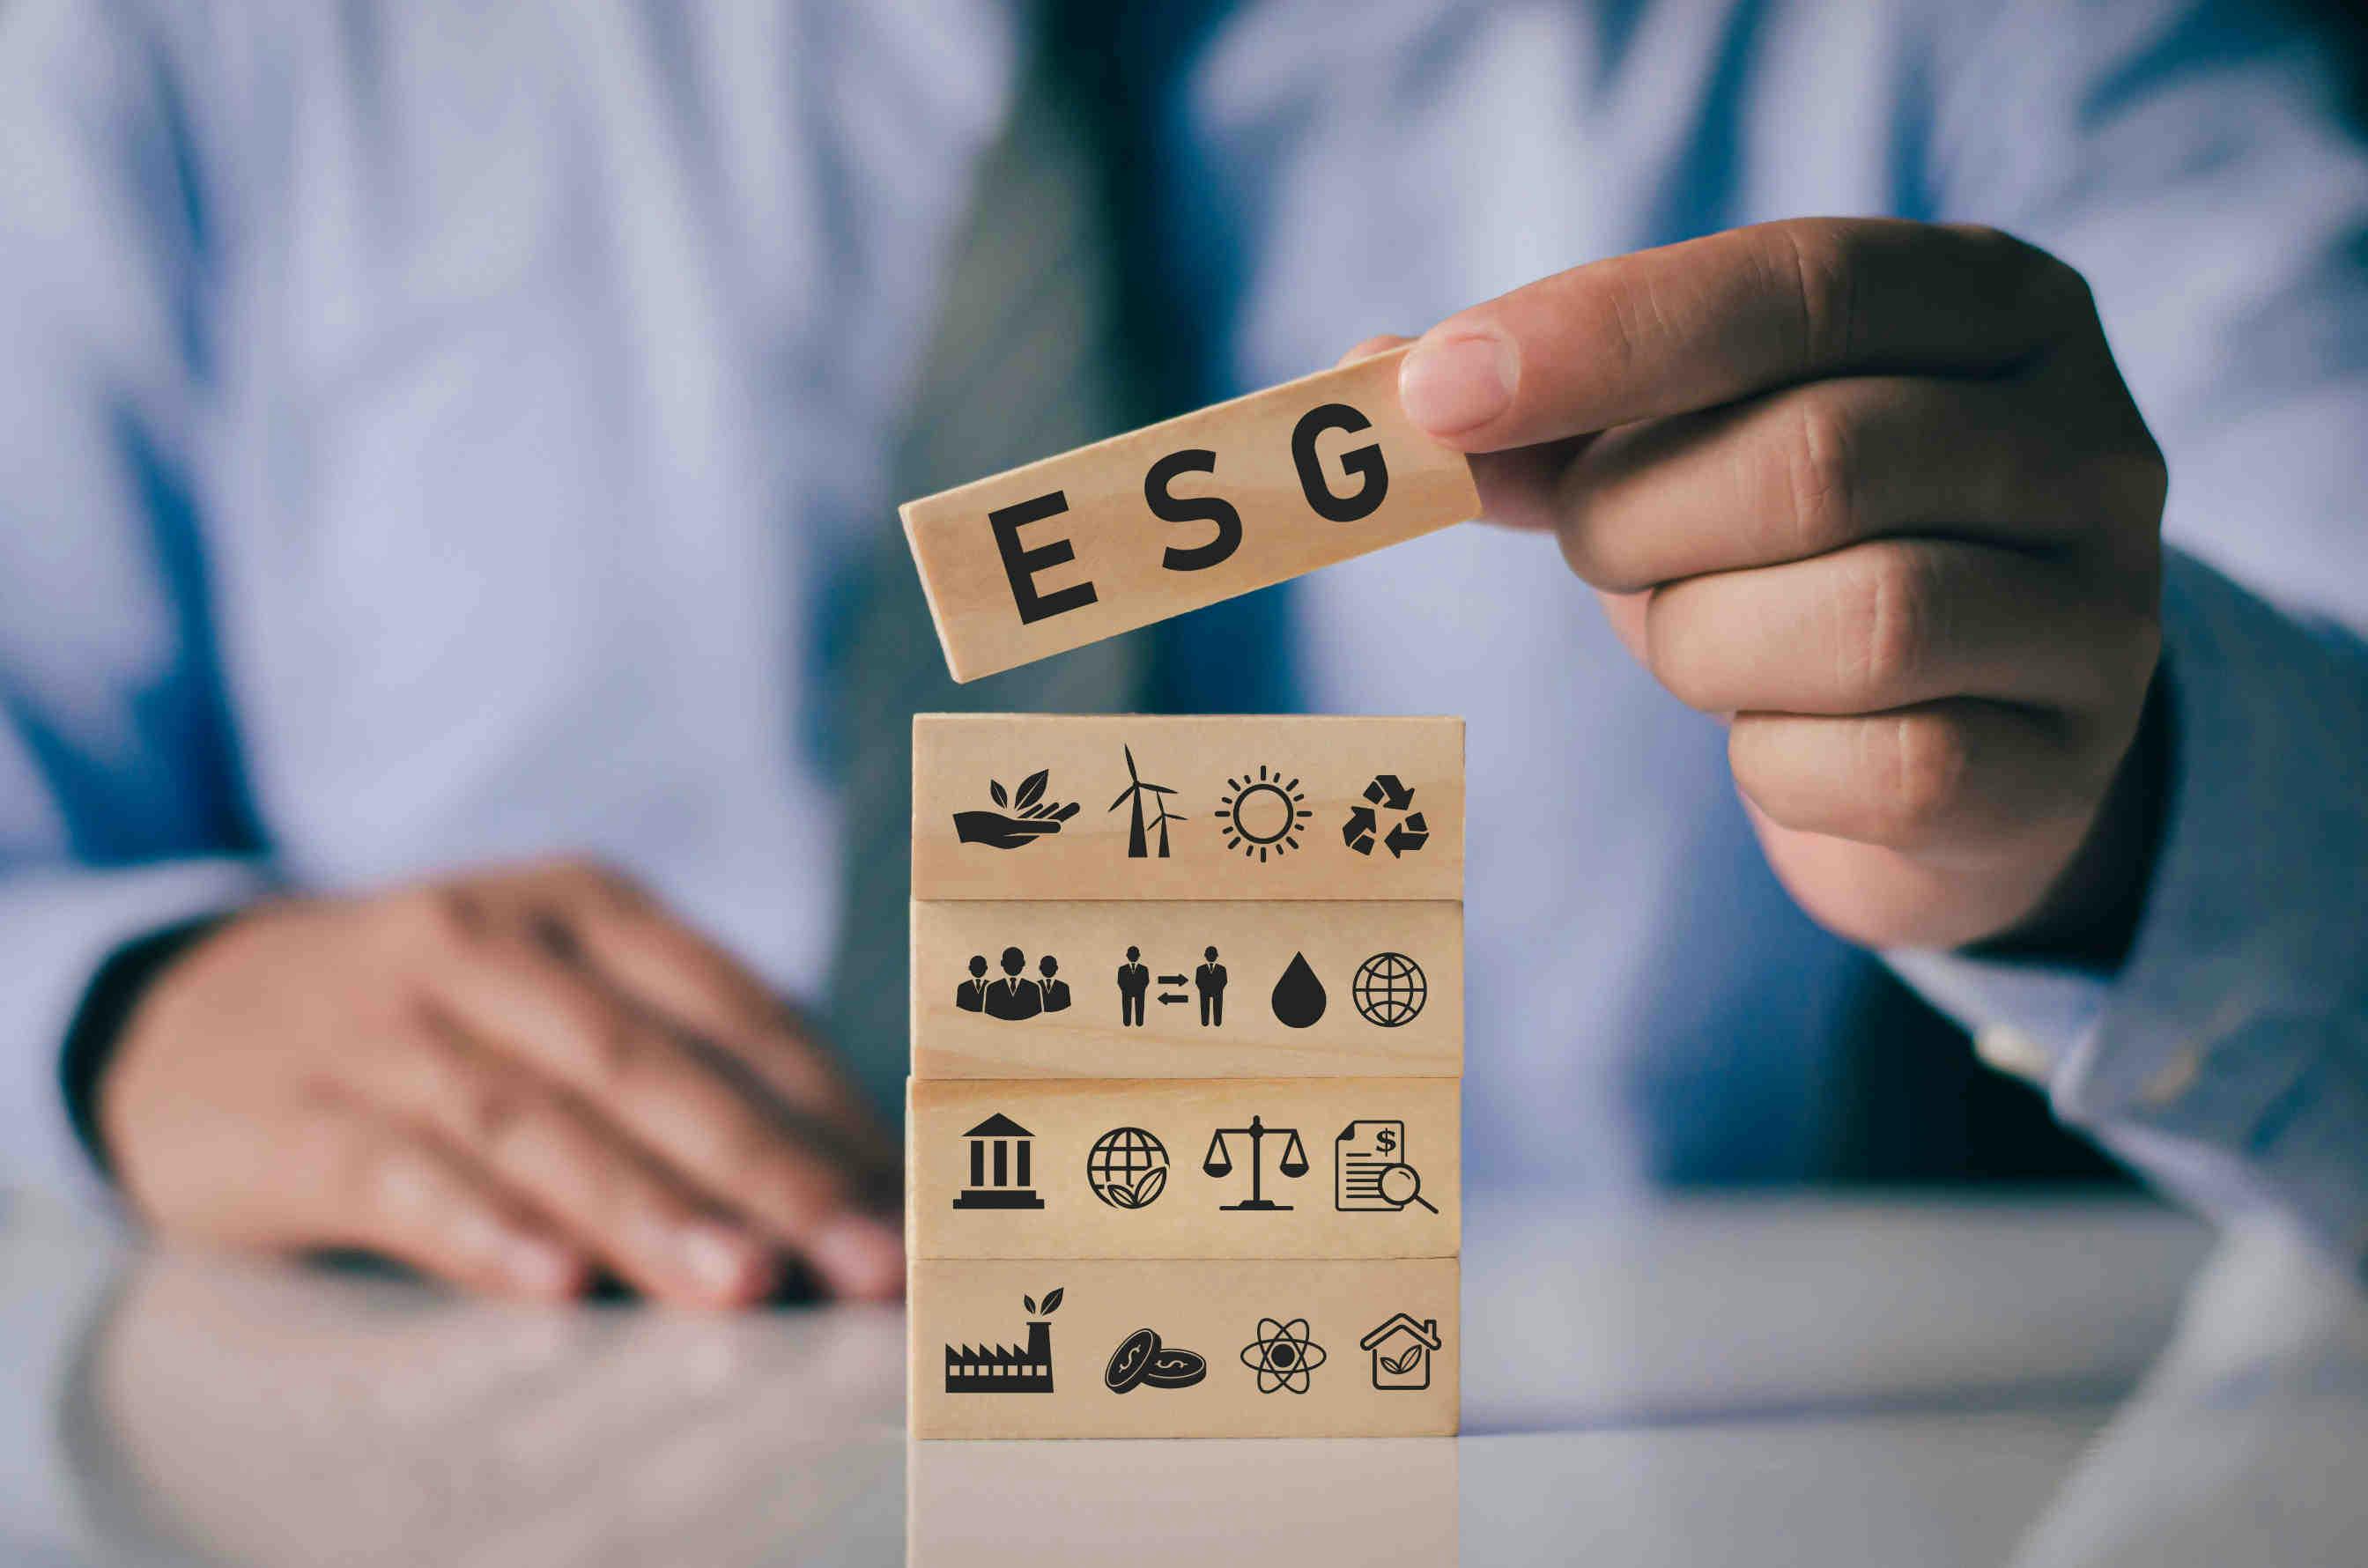 HR Manager e adozione delle politiche ESG